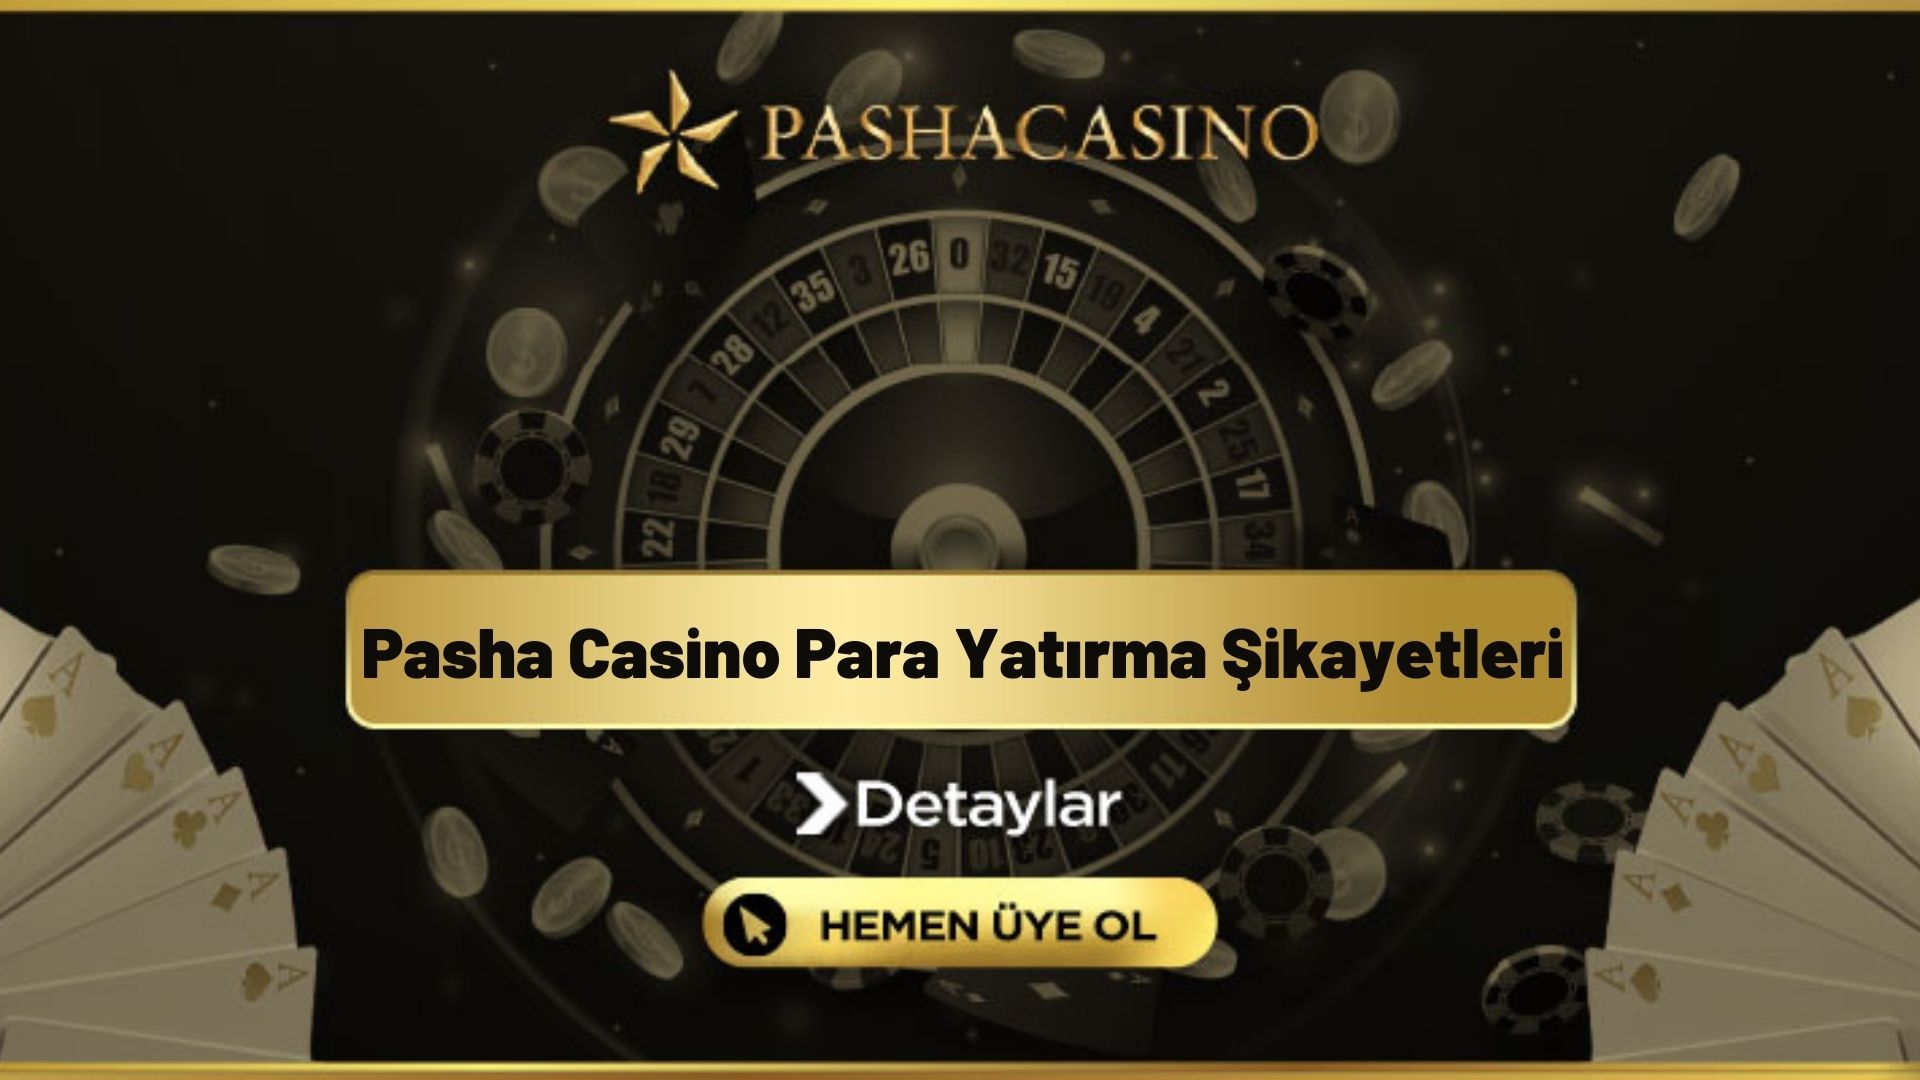 Pasha Casino Para Yatırma Şikayetleri